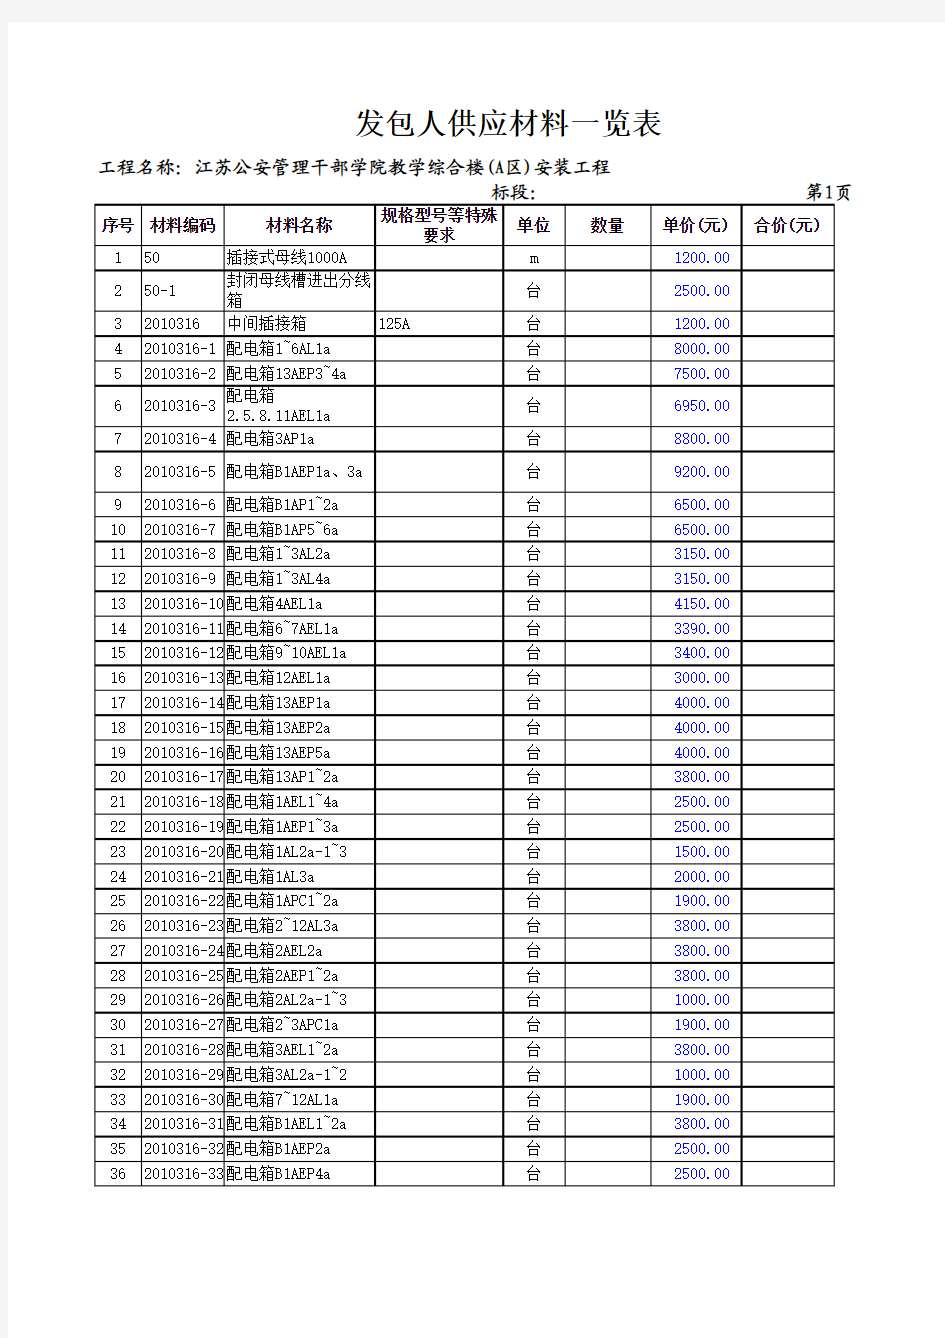 江苏公安管理干部学院教学综合楼(A区)安装工程-表-15-1发包人供应材料一览表